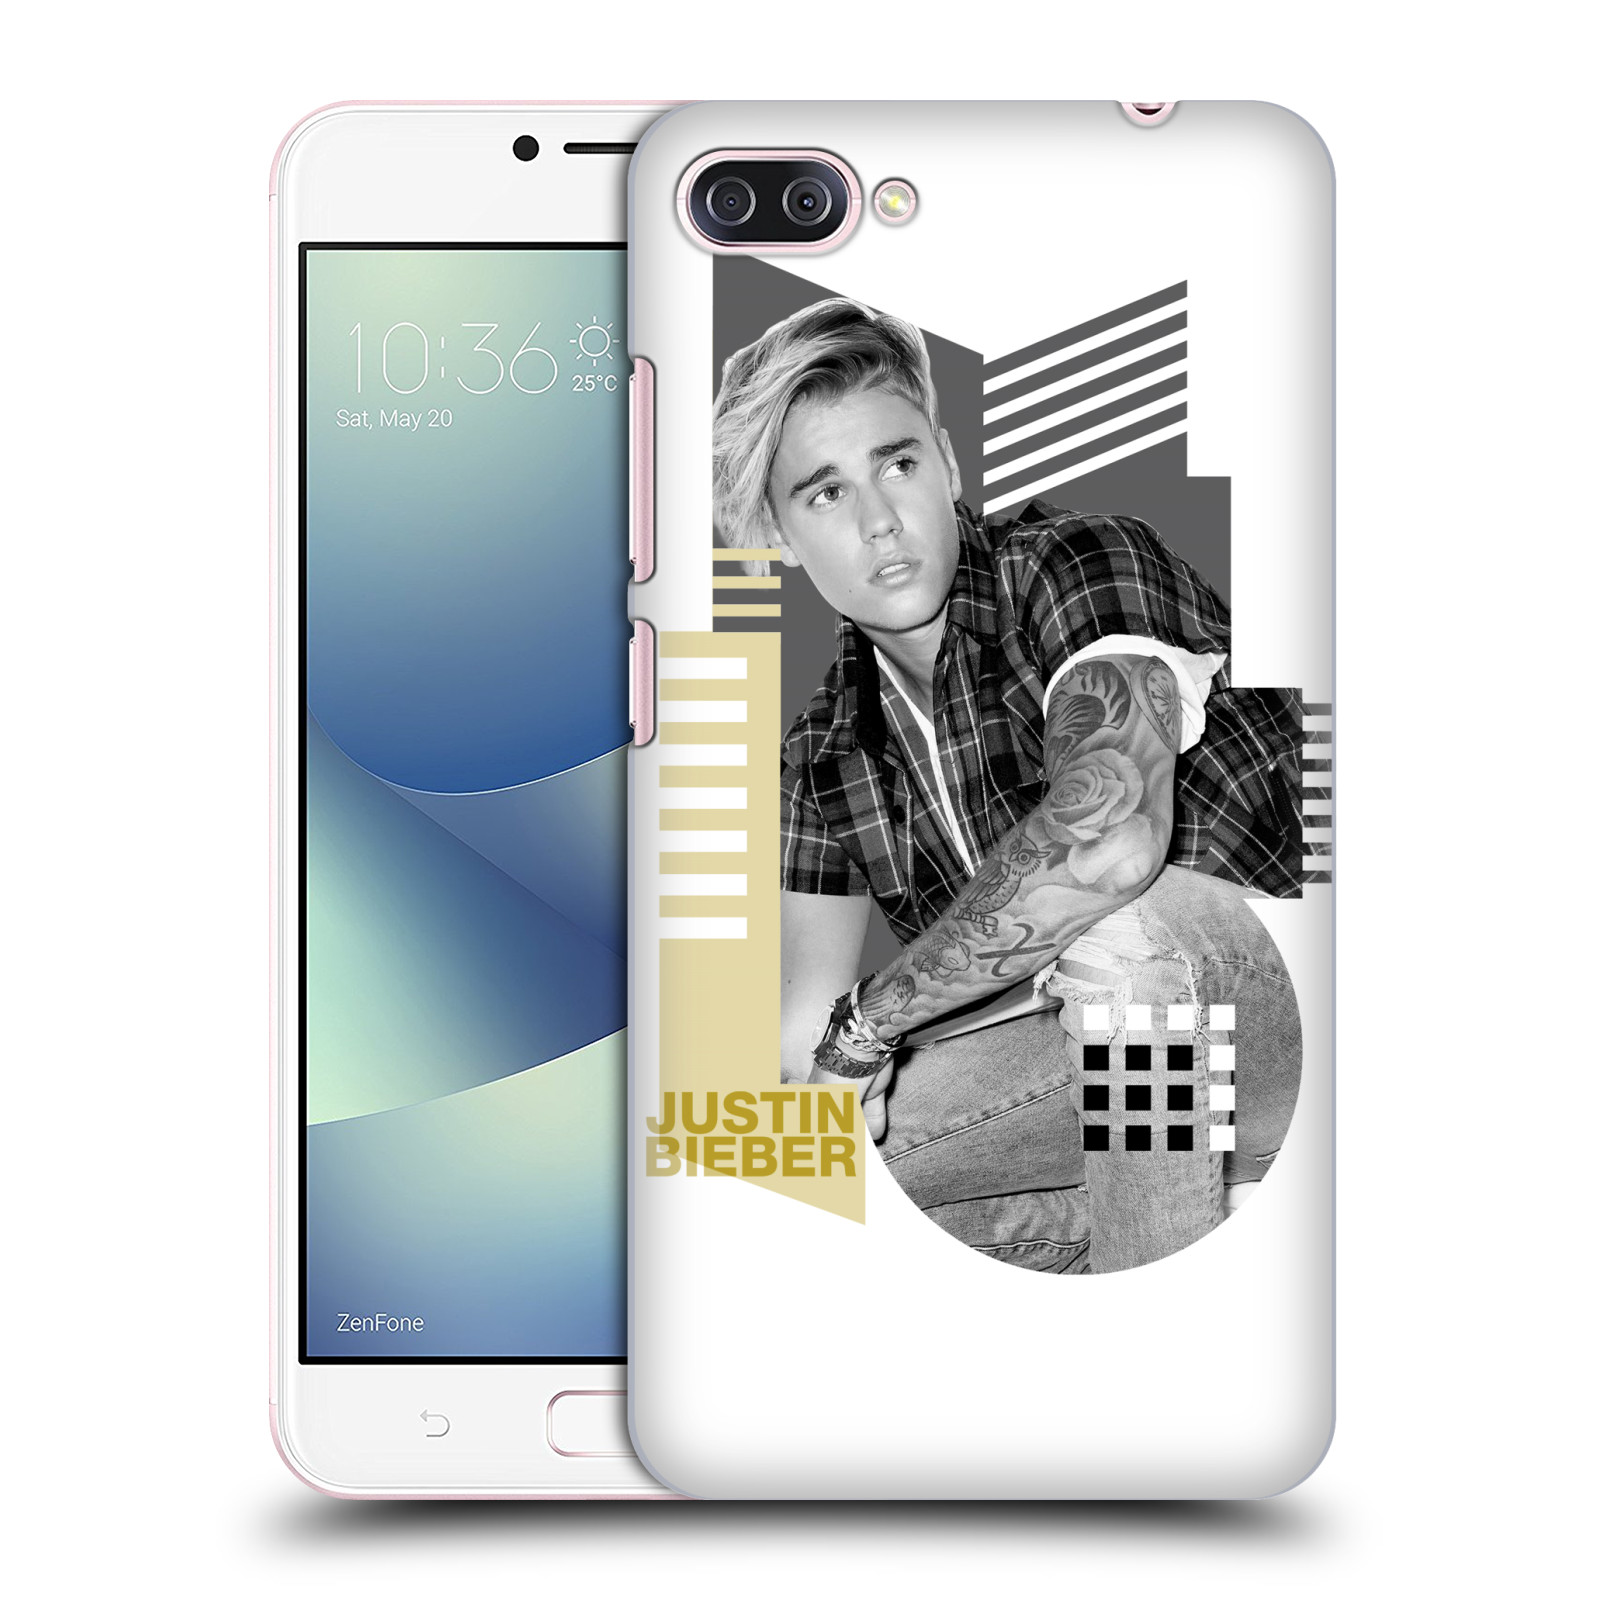 Zadní obal pro mobil Asus Zenfone 4 MAX / 4 MAX PRO (ZC554KL) - HEAD CASE - zpěvák Justin Bieber - Geometric